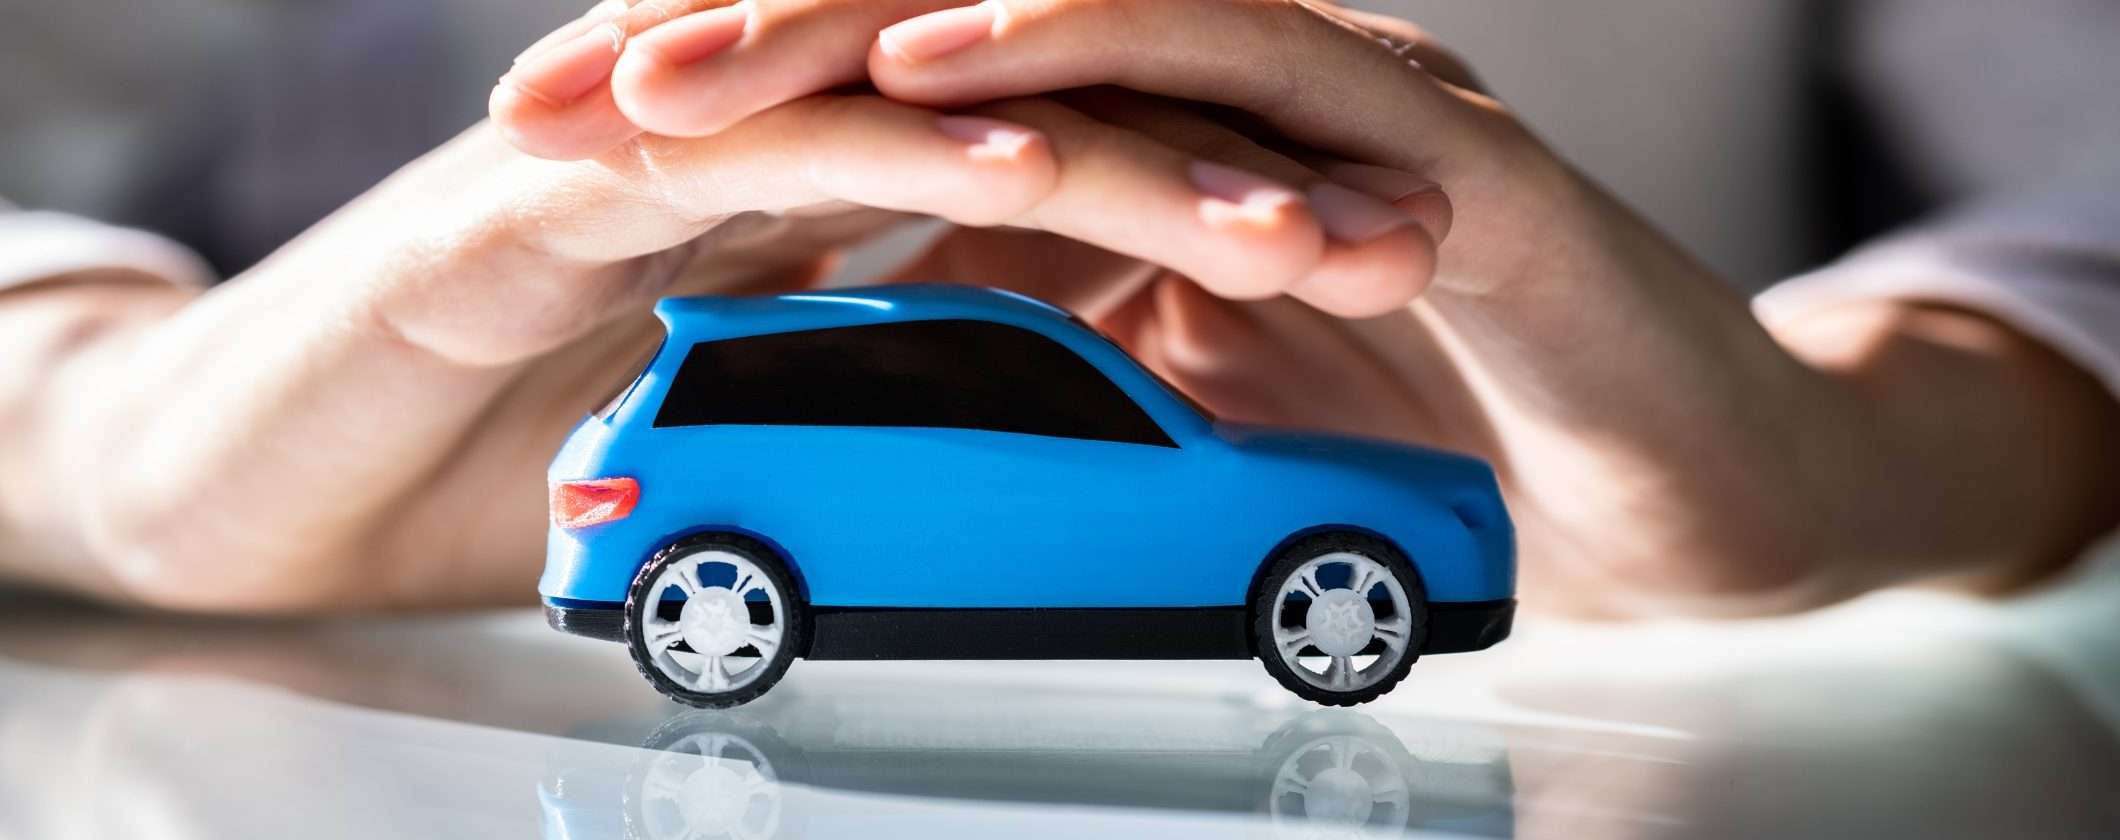 Assicurazione Auto da 131€: al rinnovo fino a 200€ di SCONTO